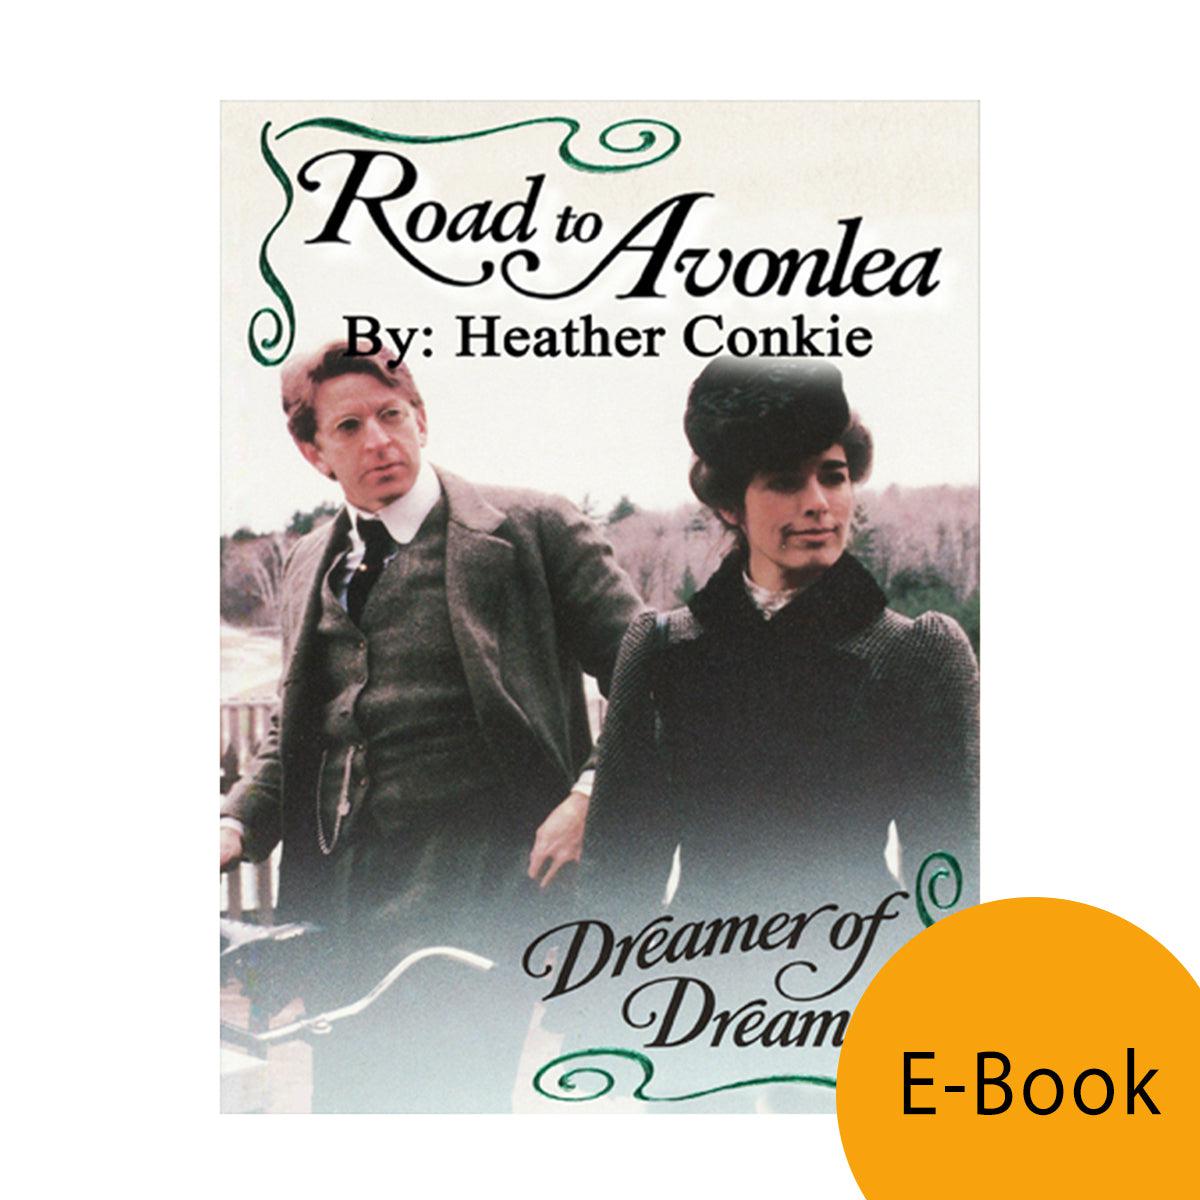 Dreamer of Dreams (Road to Avonlea Book 18)-ebook